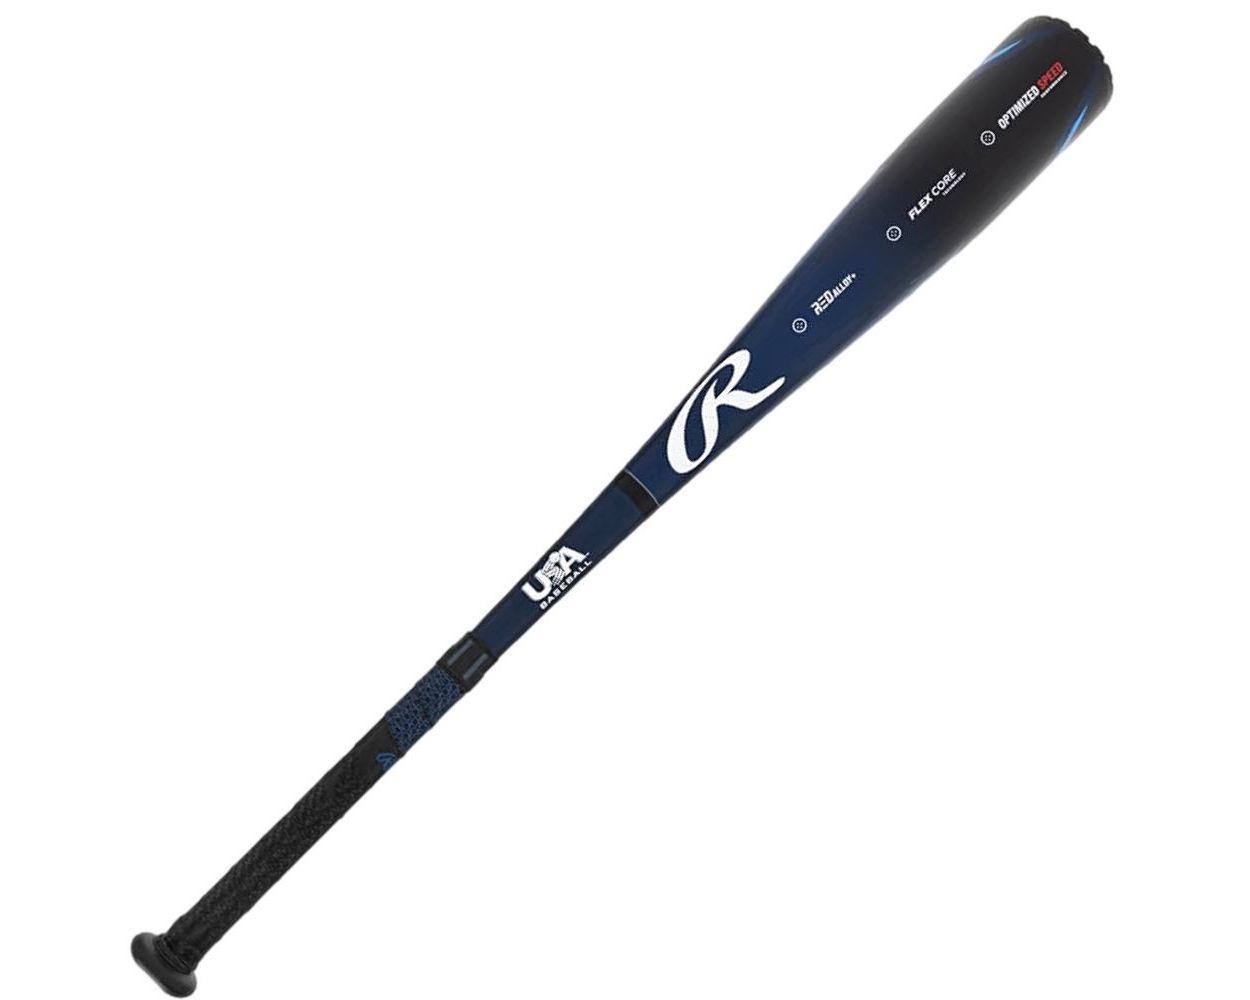 2023 Rawlings Clout USA -10 Baseball Bat